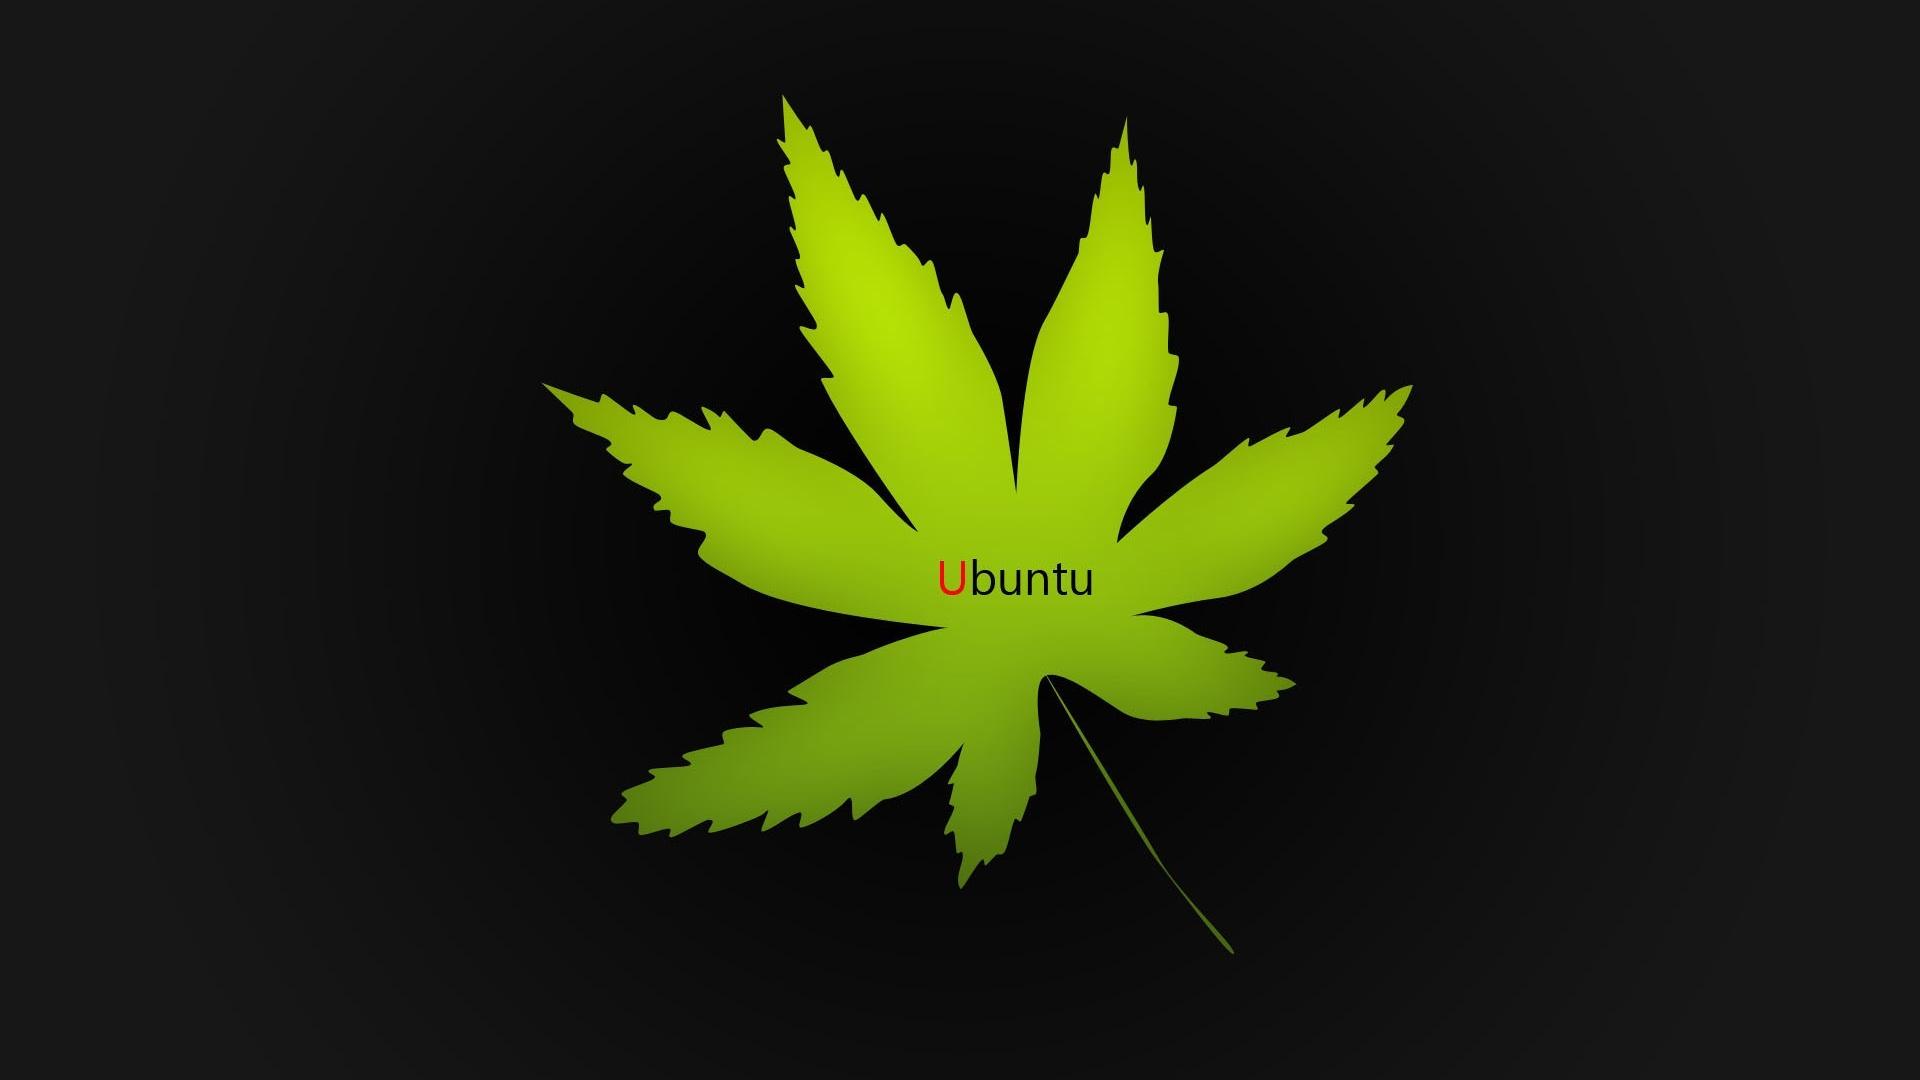 Ubuntu hemp leaves marijuana wallpaper | (54272)